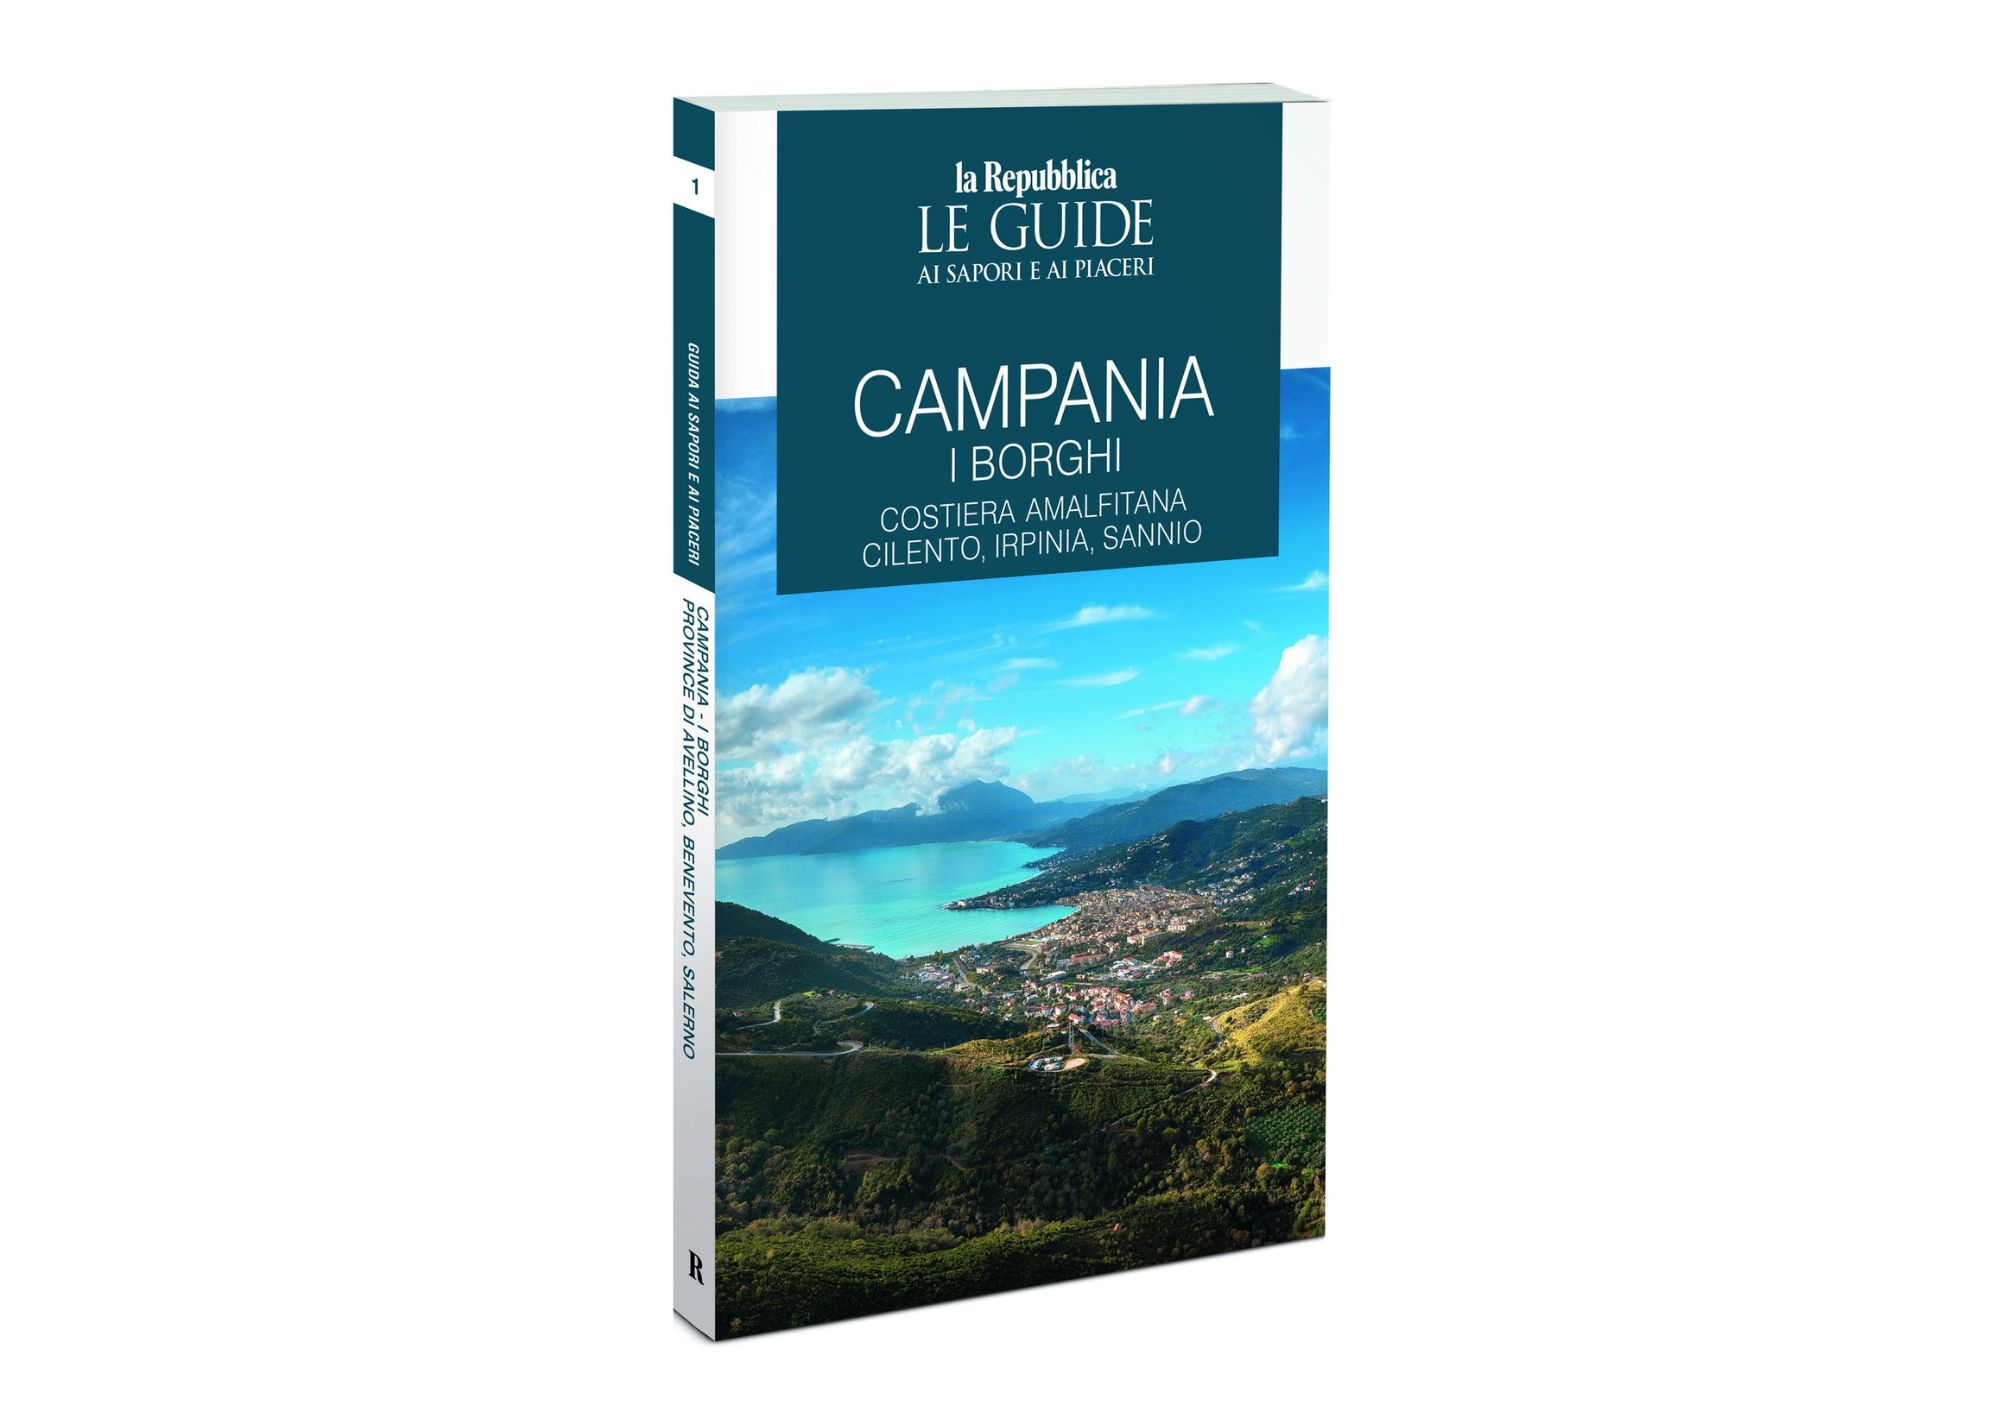 «Campania borghi», le bellezze del Cilento nella nuova Guida di Repubblica